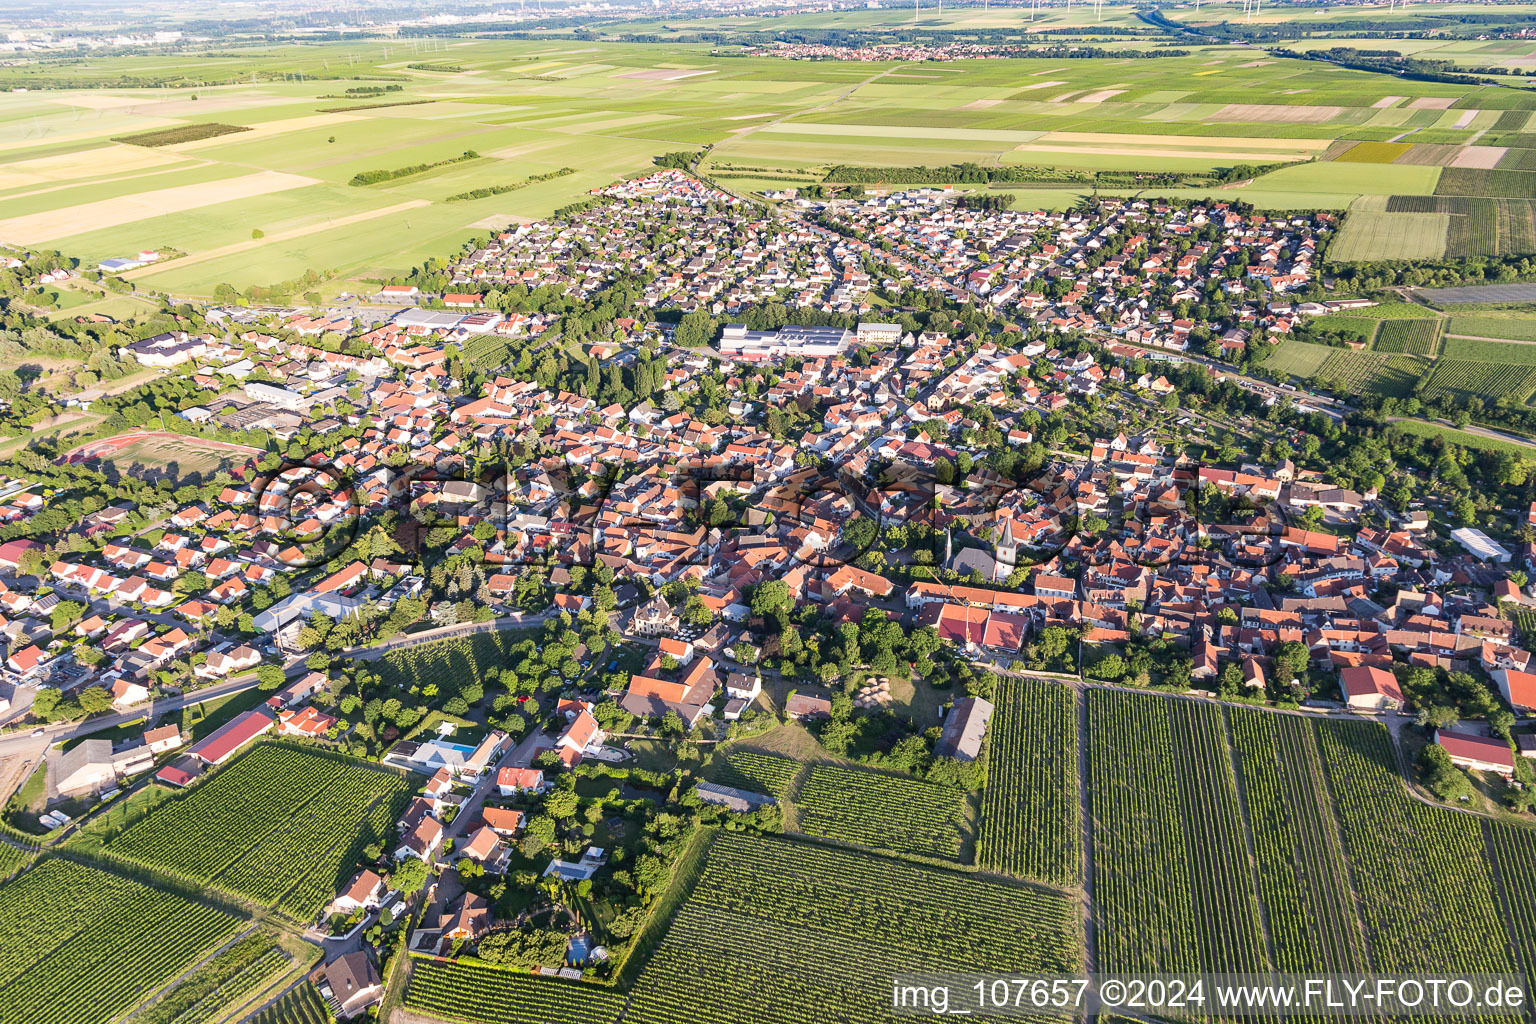 Westhofen im Bundesland Rheinland-Pfalz, Deutschland aus der Luft betrachtet